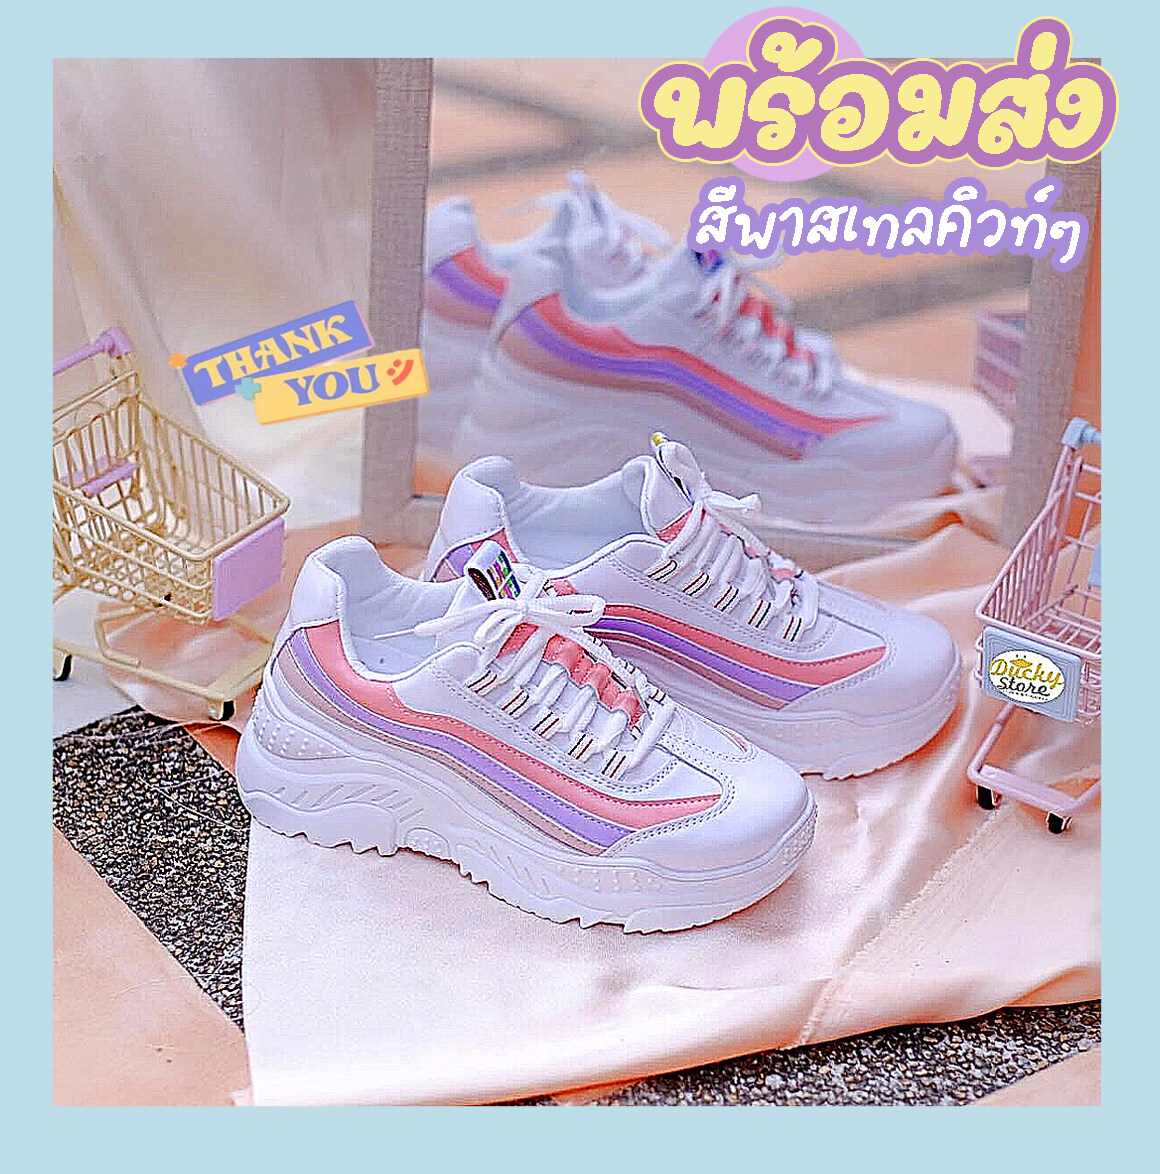 👑(สินค้าจัดส่งจากไทย 🏳️‍🌈) 199 !!! matali (มาใหม่) รองเท้าผ้าใบ รองเท้าแฟชั่น รองเท้าผ้าใบผู้หญิง เสริมส้น 5 ซม.